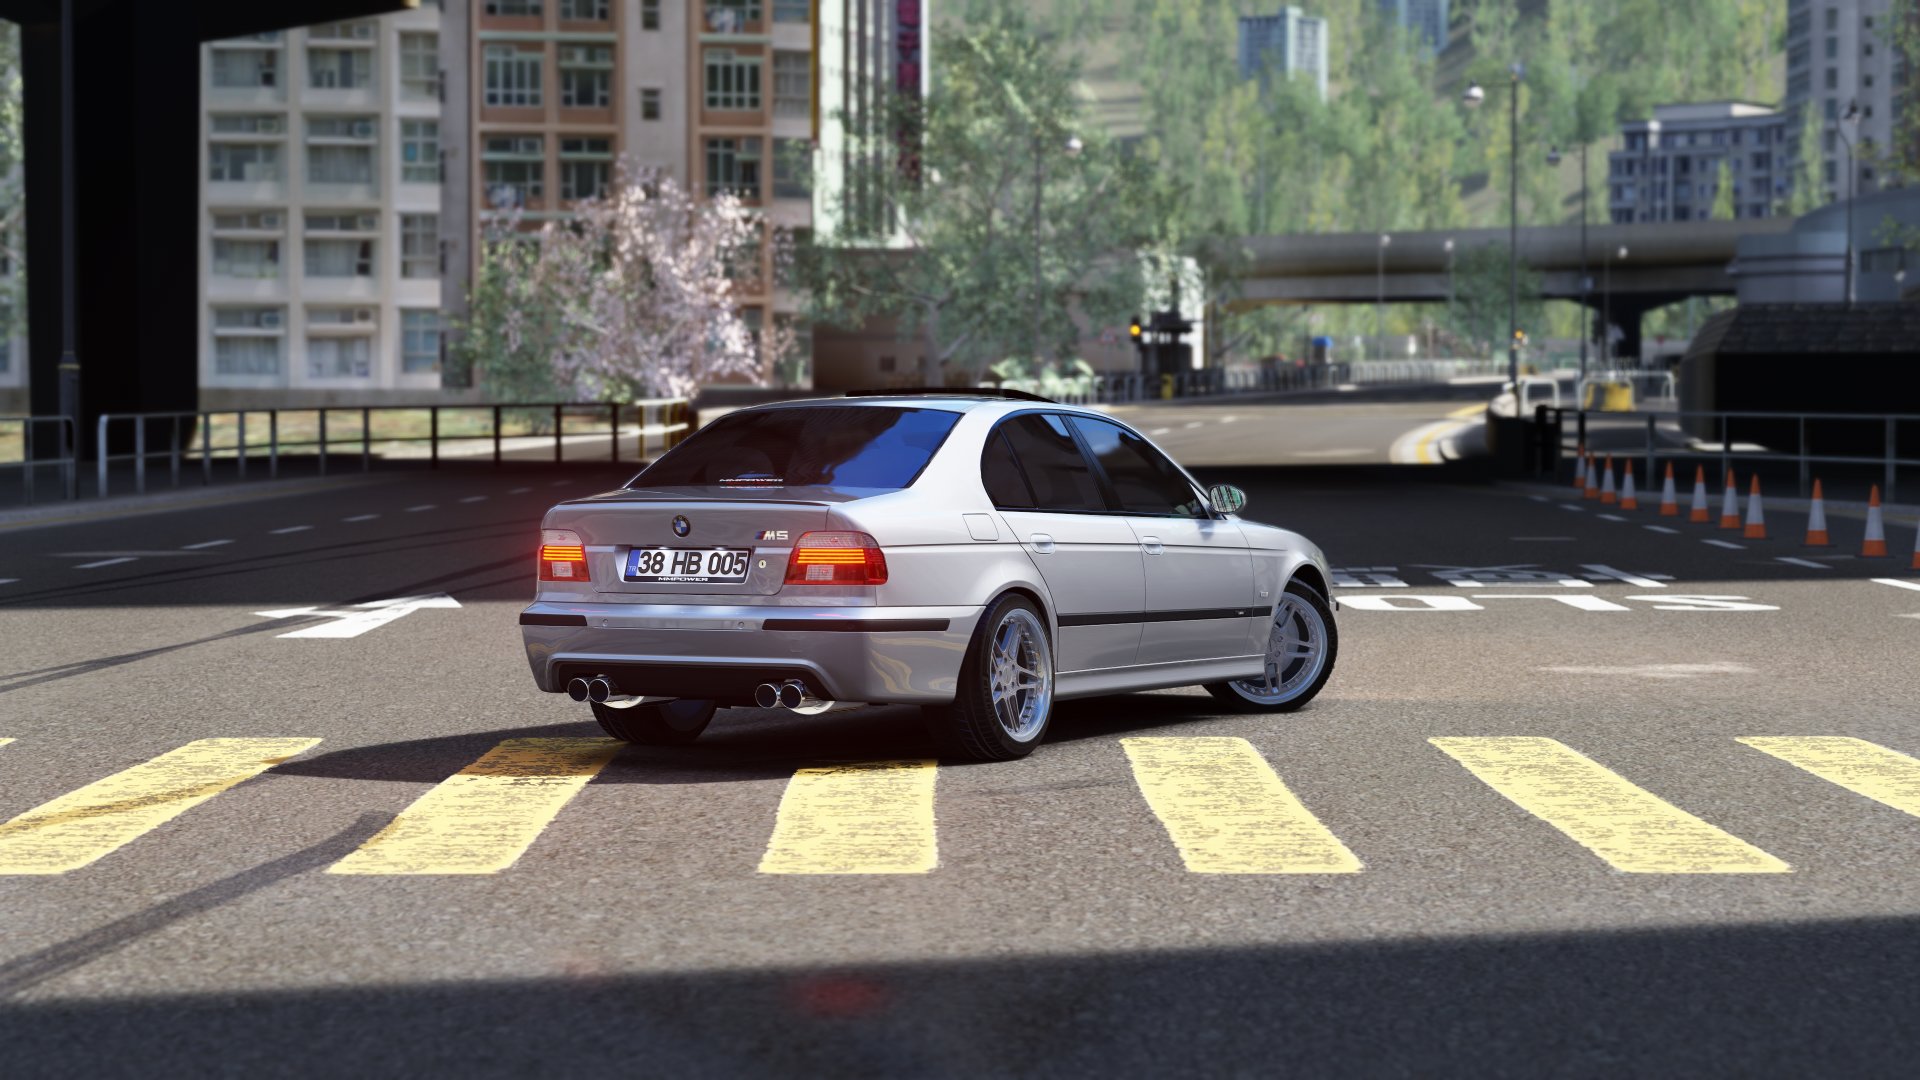 20220811-050616-Hong-MMPOWER BMW E39 M5.jpg